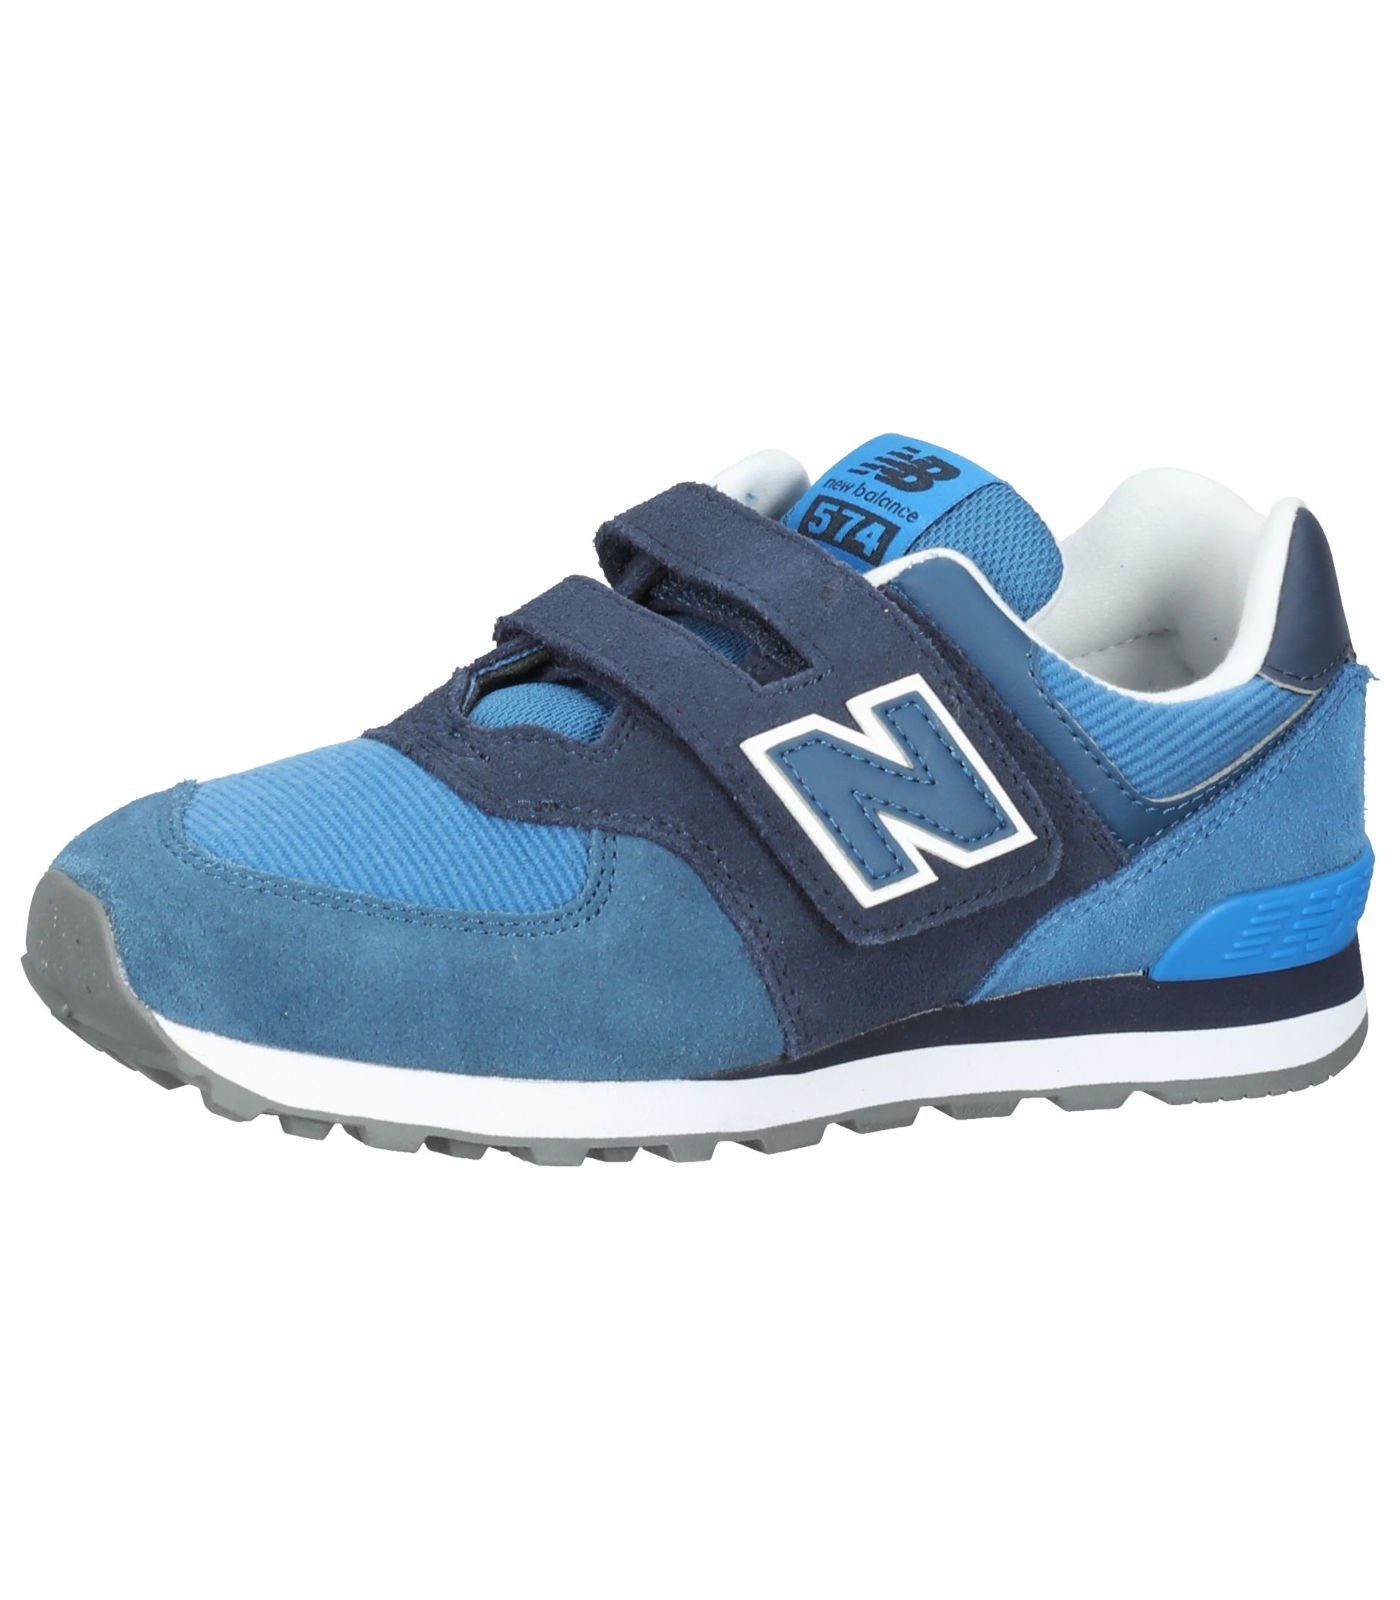 Veloursleder/Textil Blau Balance Sneaker New Sneaker